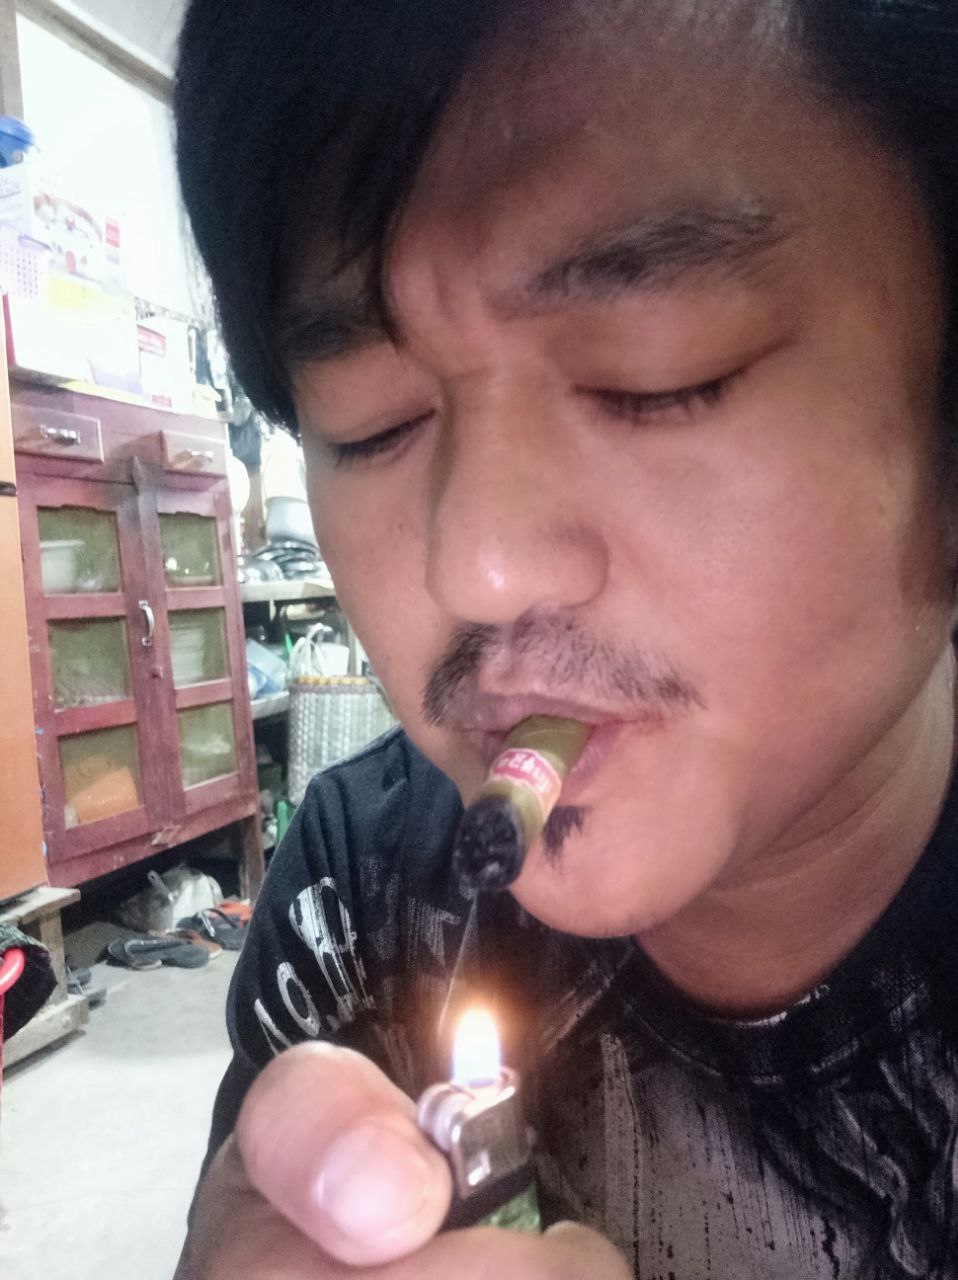 a person lighting a cigarette